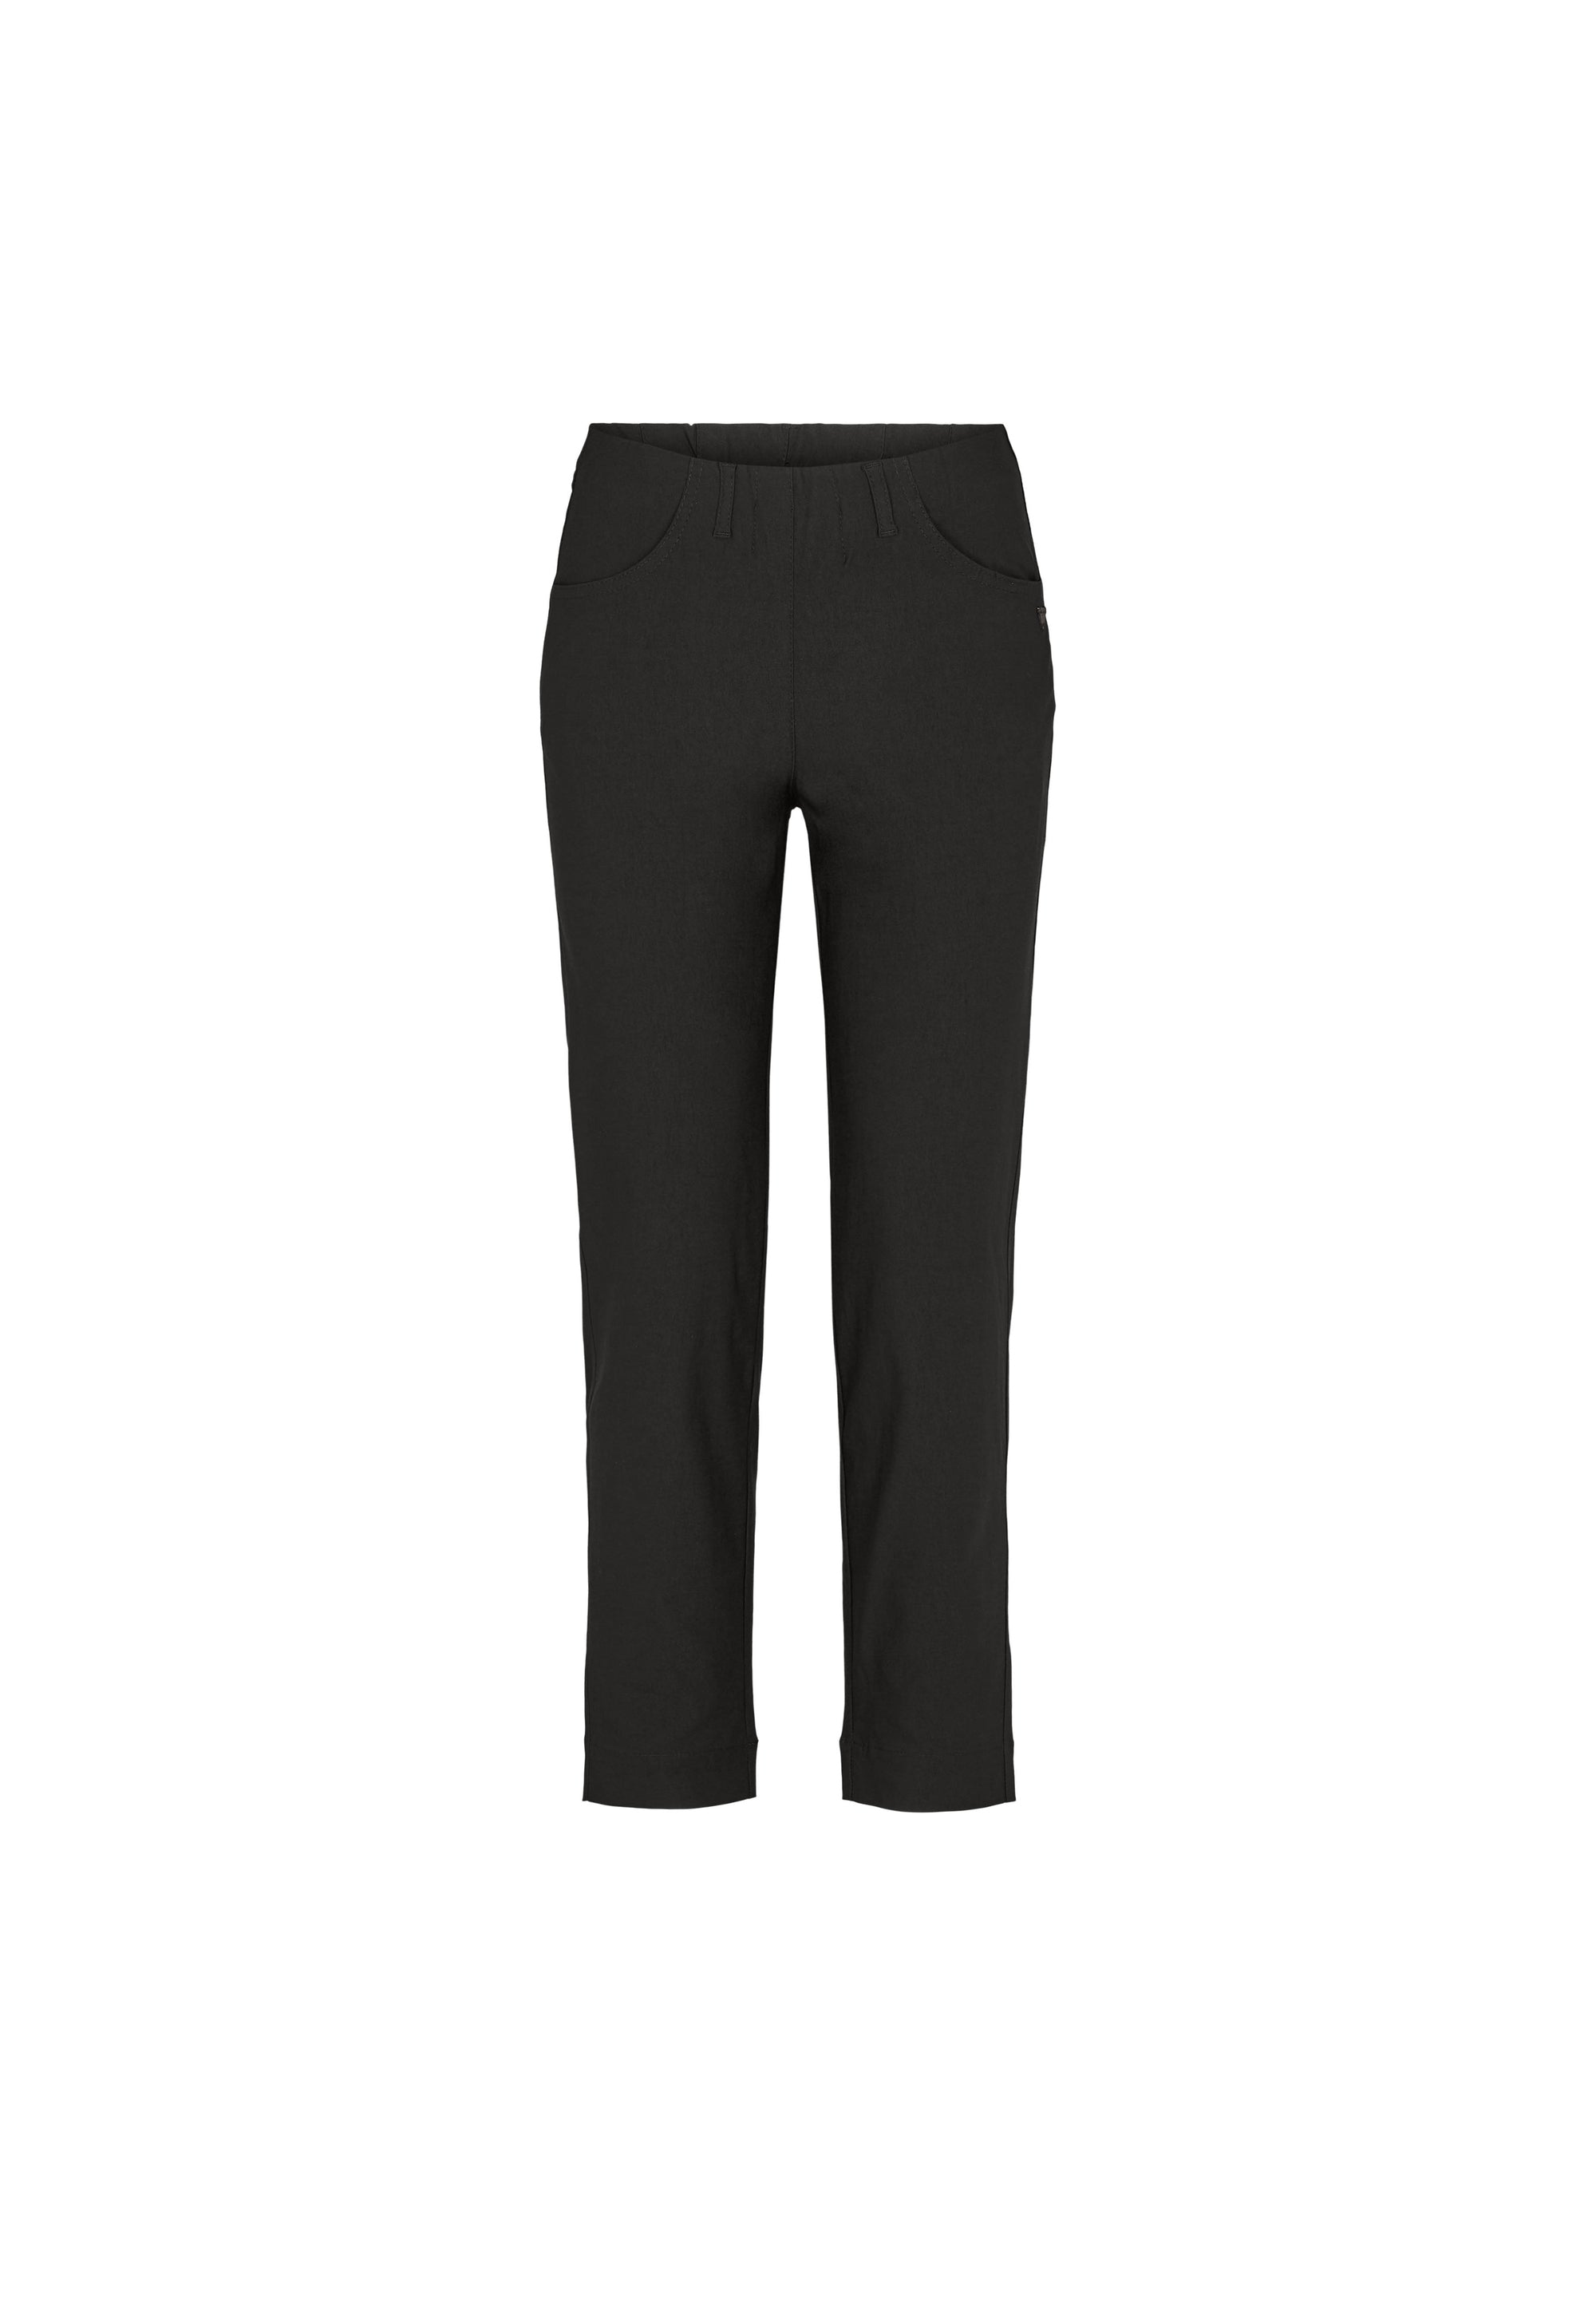 LAURIE Kelly Regular - Short Length Trousers REGULAR 99970 Black